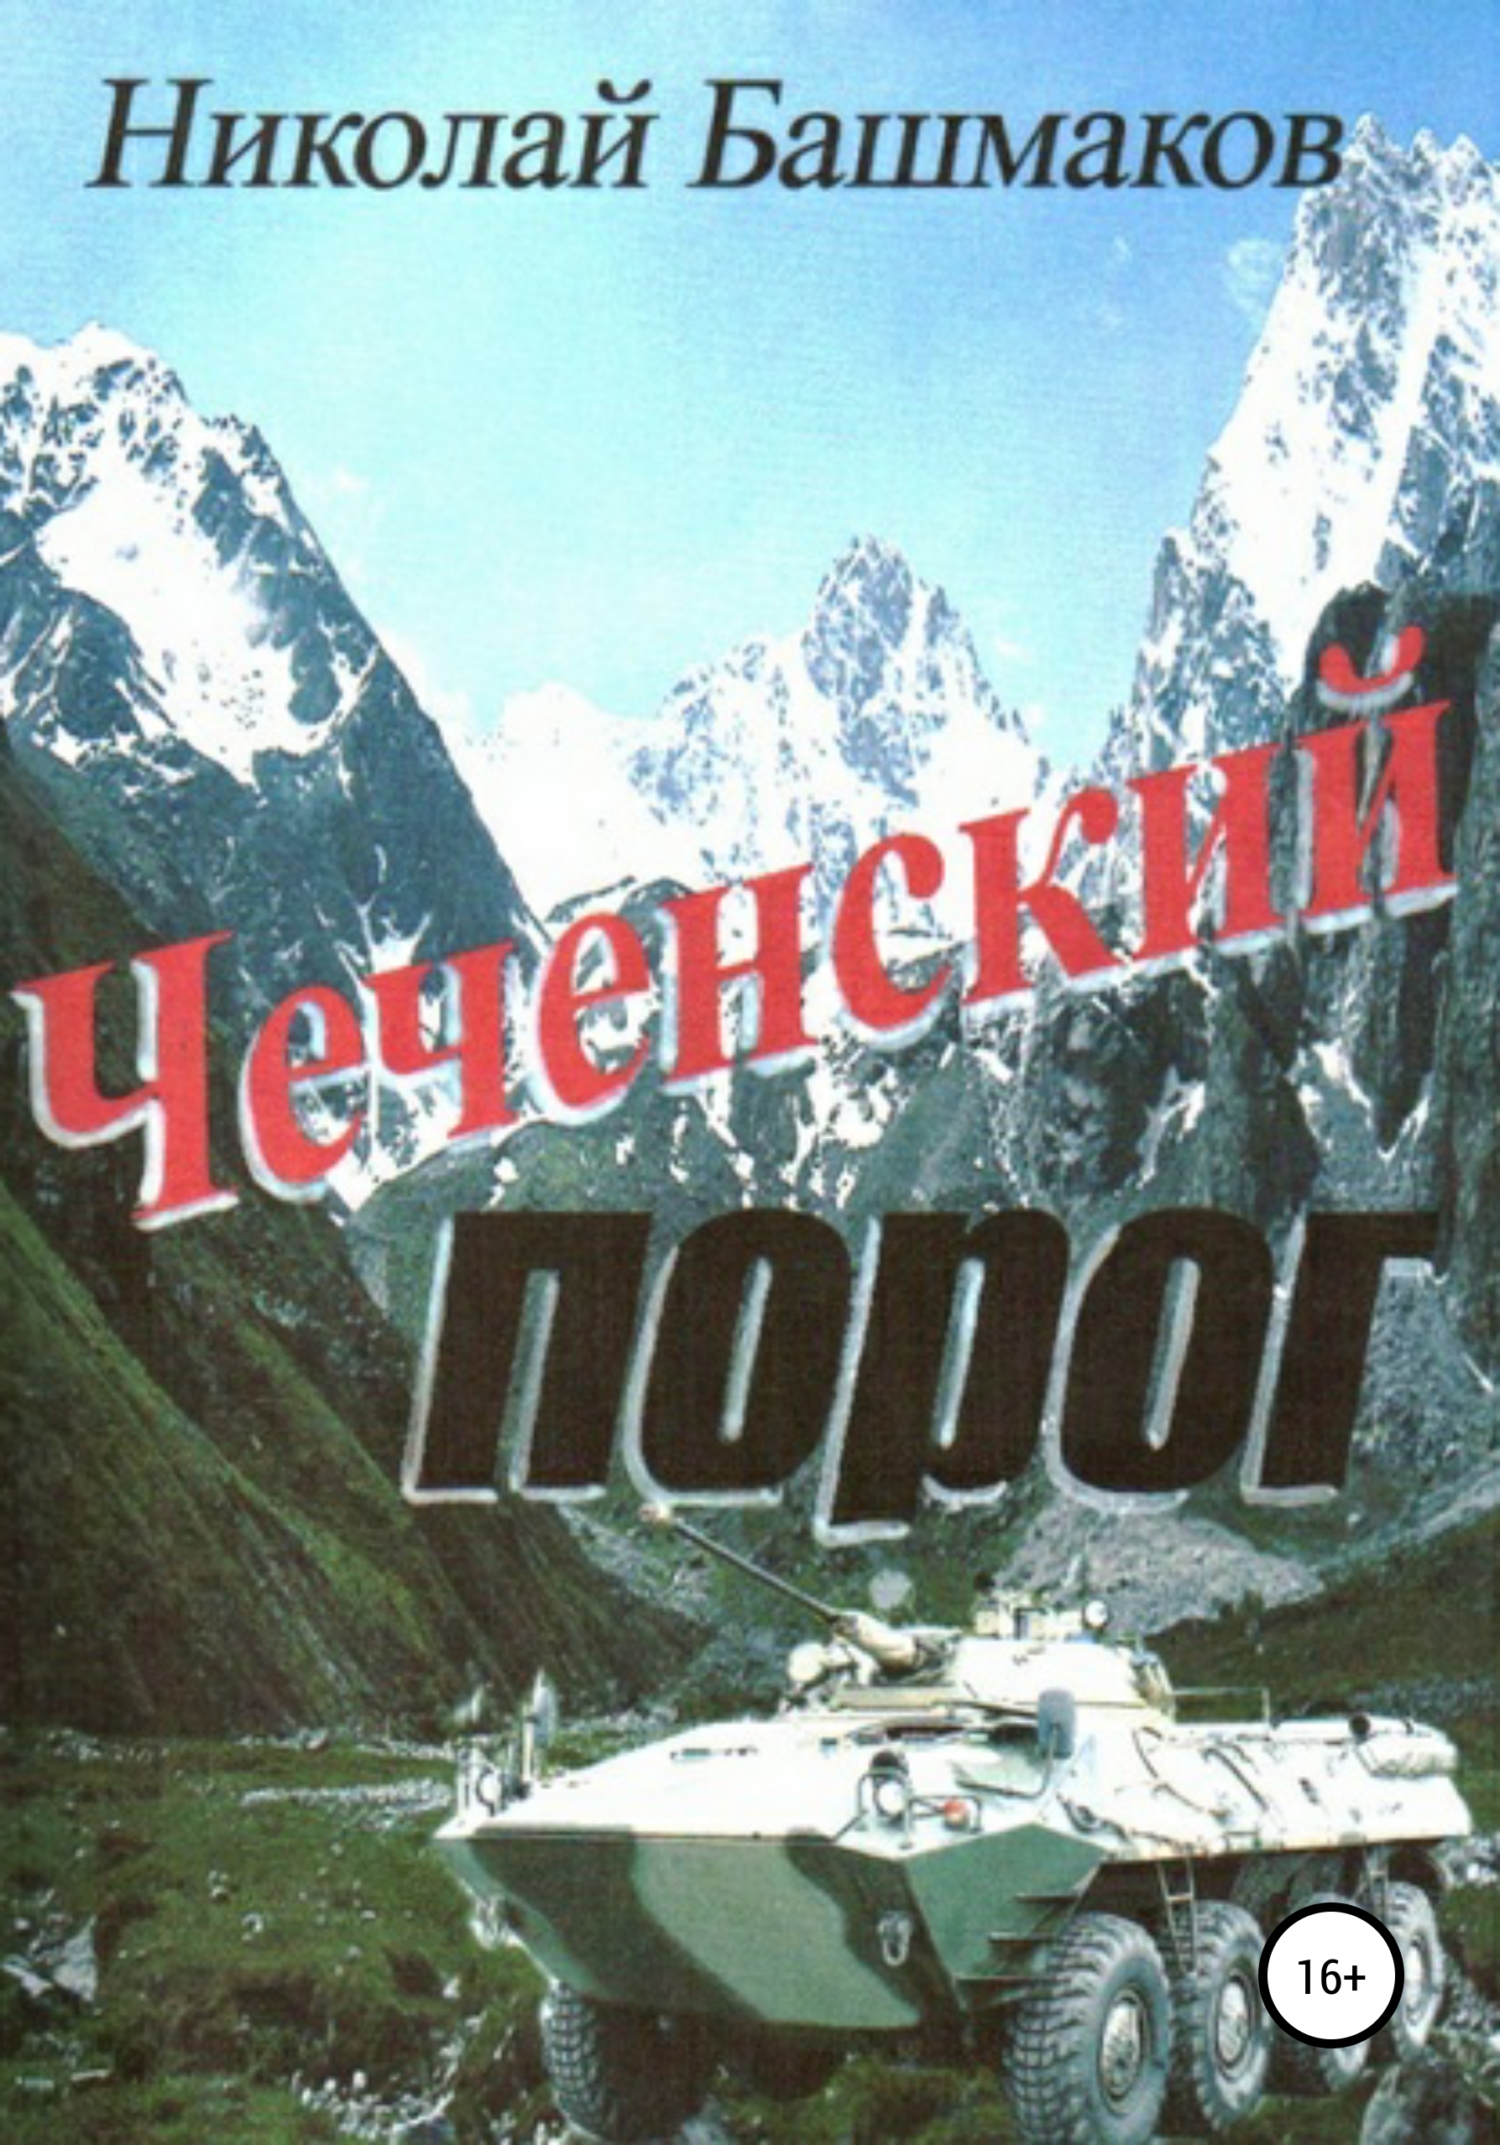 Читать книгу про чечню. Книги о Чеченской войне. Книга про Чечню. Книга о чеченских героях.